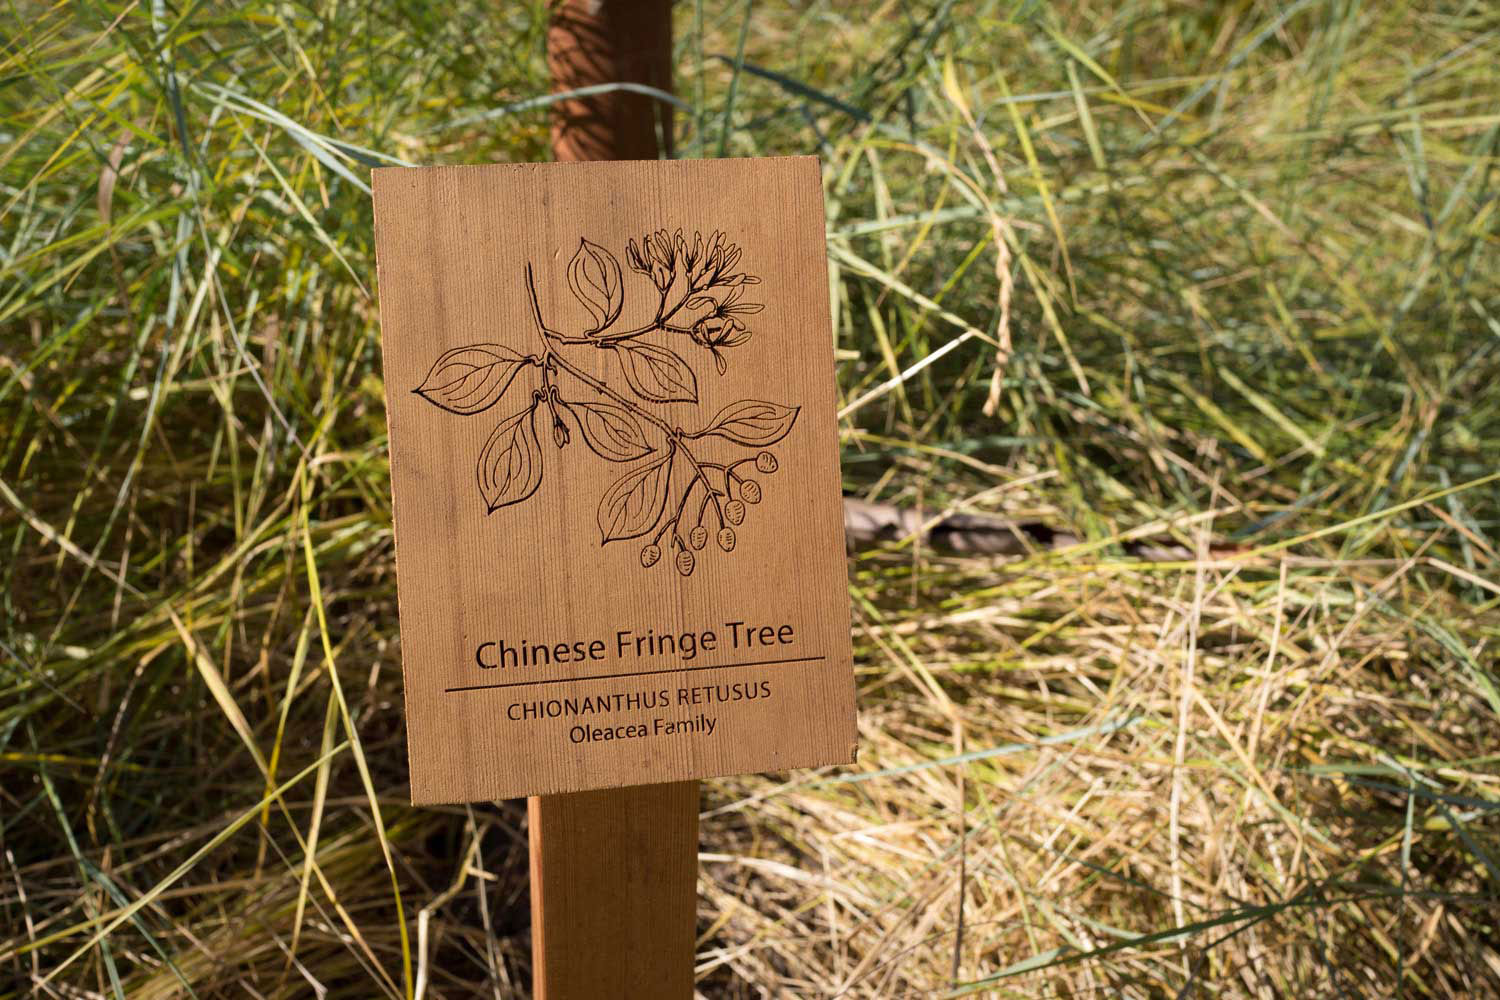 botanical-illustration-identification-signage-Chinese-Fringe-Tree-Chionanthus-retusus-Facebook-HQ-by-Erin-Ellis.jpg